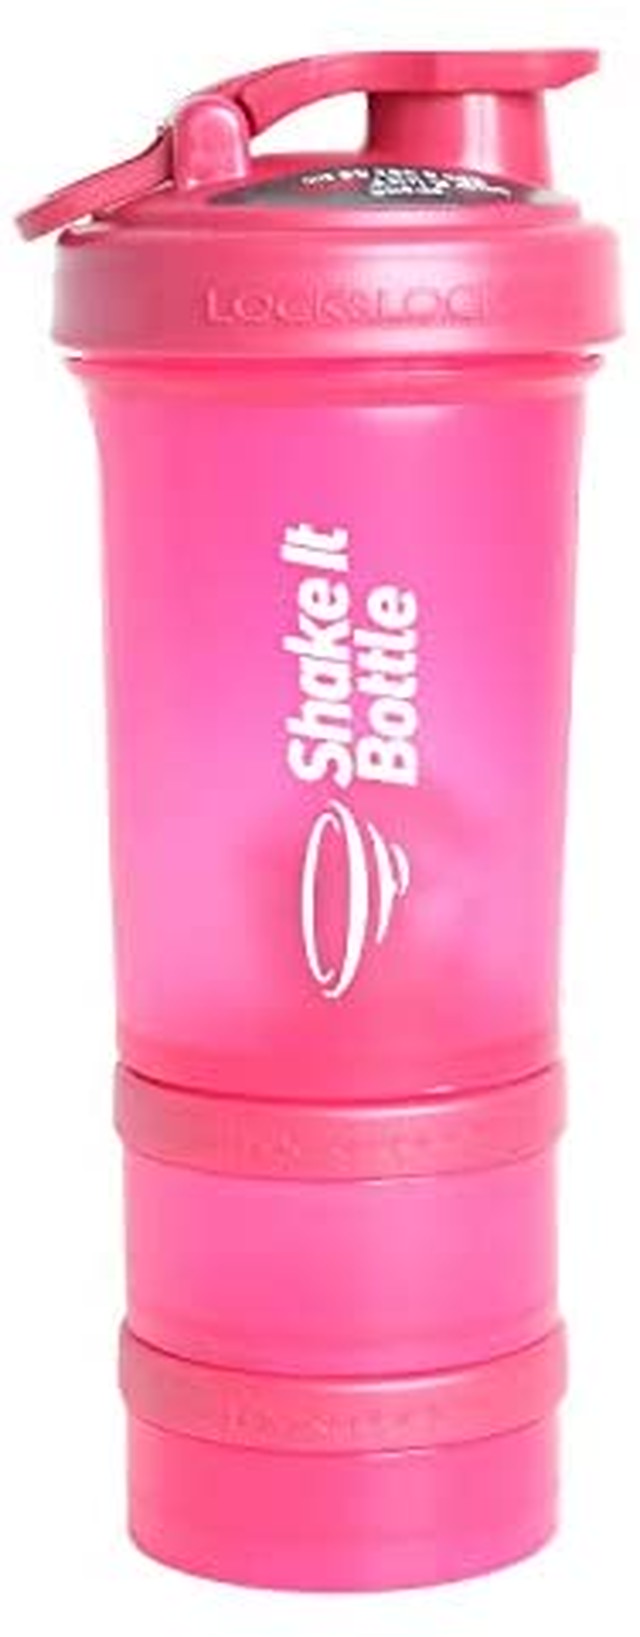 Jpcs Shake It Bottle プロテイン シェイカー ボトル 600ml 女性 ピンク 液漏れ 匂い防止 かわいい おしゃれ 分離できる パウダーケース ピルケース付 Pink Az Japan Classic Store